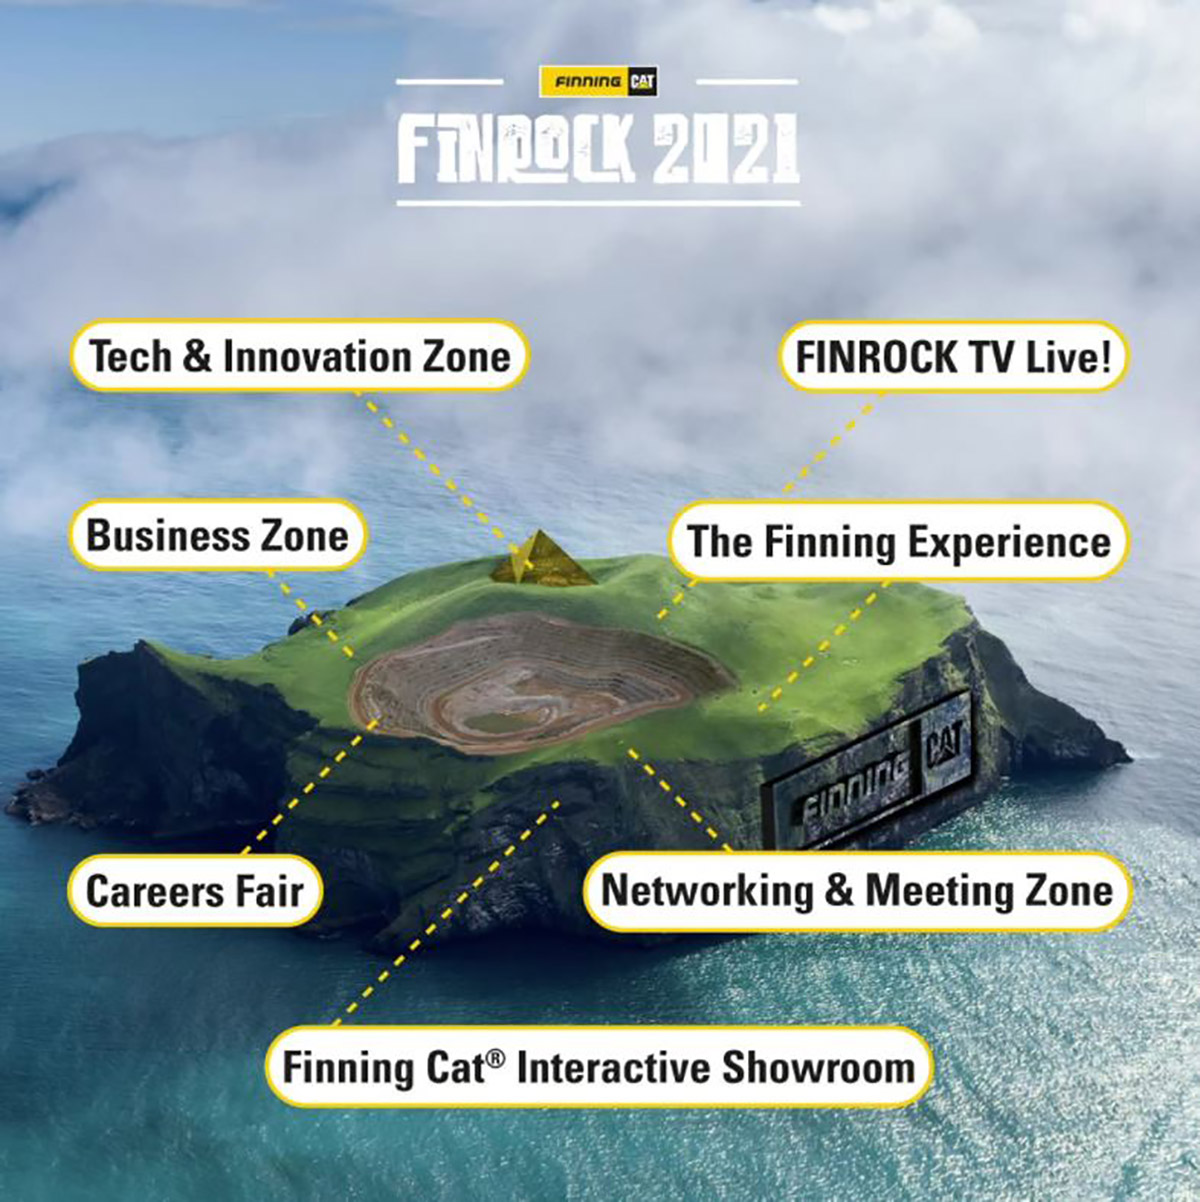 Finrock21 zones